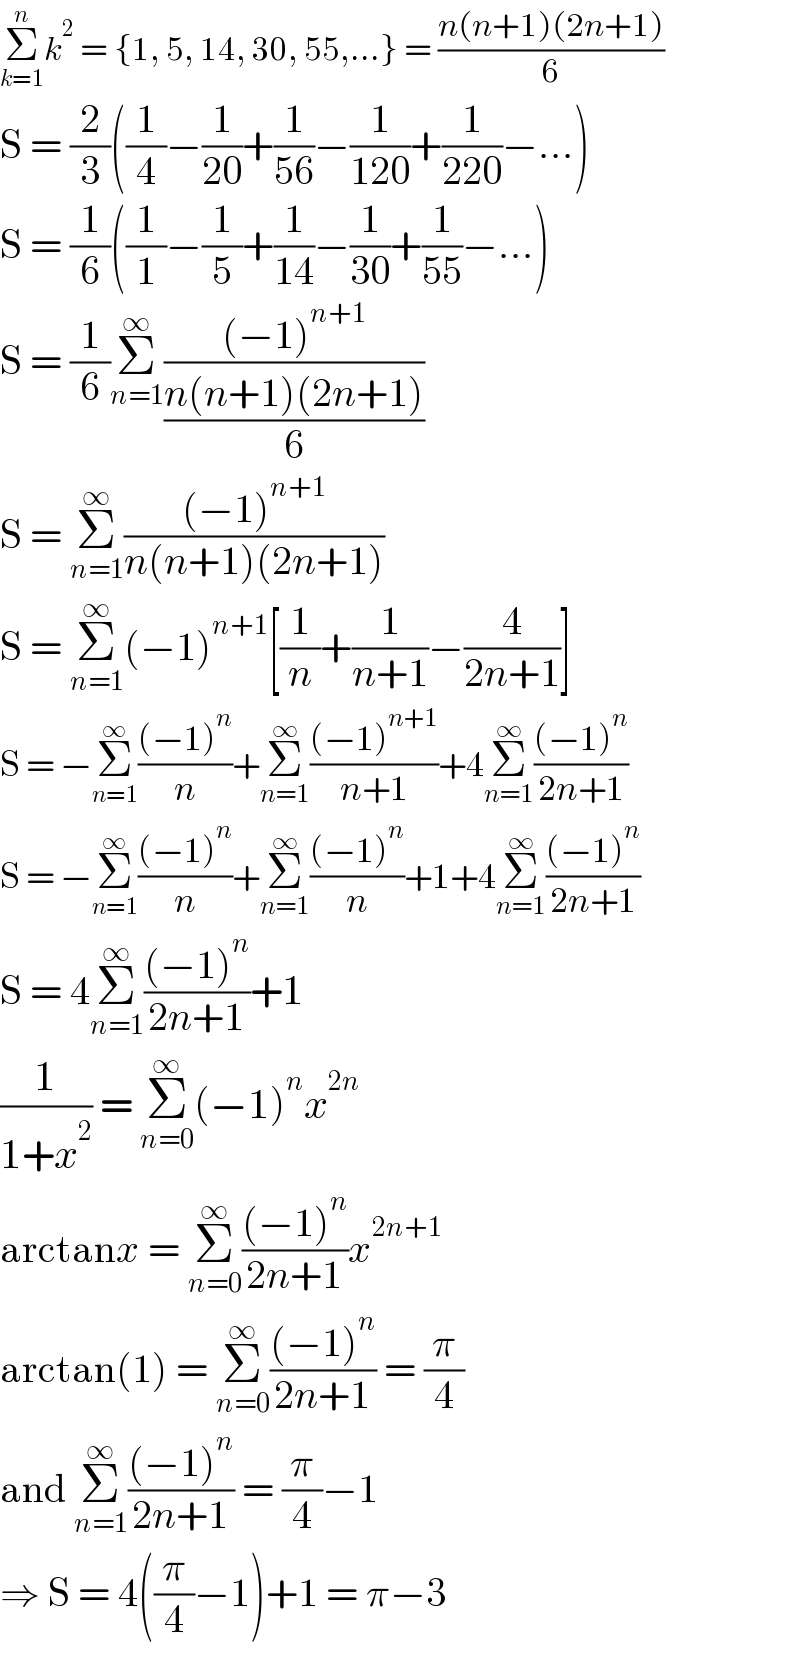 Σ_(k=1) ^n k^2  = {1, 5, 14, 30, 55,...} = ((n(n+1)(2n+1))/6)  S = (2/3)((1/4)−(1/(20))+(1/(56))−(1/(120))+(1/(220))−...)  S = (1/6)((1/1)−(1/5)+(1/(14))−(1/(30))+(1/(55))−...)  S = (1/6)Σ_(n=1) ^∞ (((−1)^(n+1) )/((n(n+1)(2n+1))/6))  S = Σ_(n=1) ^∞ (((−1)^(n+1) )/(n(n+1)(2n+1)))  S = Σ_(n=1) ^∞ (−1)^(n+1) [(1/n)+(1/(n+1))−(4/(2n+1))]  S = −Σ_(n=1) ^∞ (((−1)^n )/n)+Σ_(n=1) ^∞ (((−1)^(n+1) )/(n+1))+4Σ_(n=1) ^∞ (((−1)^n )/(2n+1))  S = −Σ_(n=1) ^∞ (((−1)^n )/n)+Σ_(n=1) ^∞ (((−1)^n )/n)+1+4Σ_(n=1) ^∞ (((−1)^n )/(2n+1))  S = 4Σ_(n=1) ^∞ (((−1)^n )/(2n+1))+1  (1/(1+x^2 )) = Σ_(n=0) ^∞ (−1)^n x^(2n)   arctanx = Σ_(n=0) ^∞ (((−1)^n )/(2n+1))x^(2n+1)   arctan(1) = Σ_(n=0) ^∞ (((−1)^n )/(2n+1)) = (π/4)  and Σ_(n=1) ^∞ (((−1)^n )/(2n+1)) = (π/4)−1  ⇒ S = 4((π/4)−1)+1 = π−3  